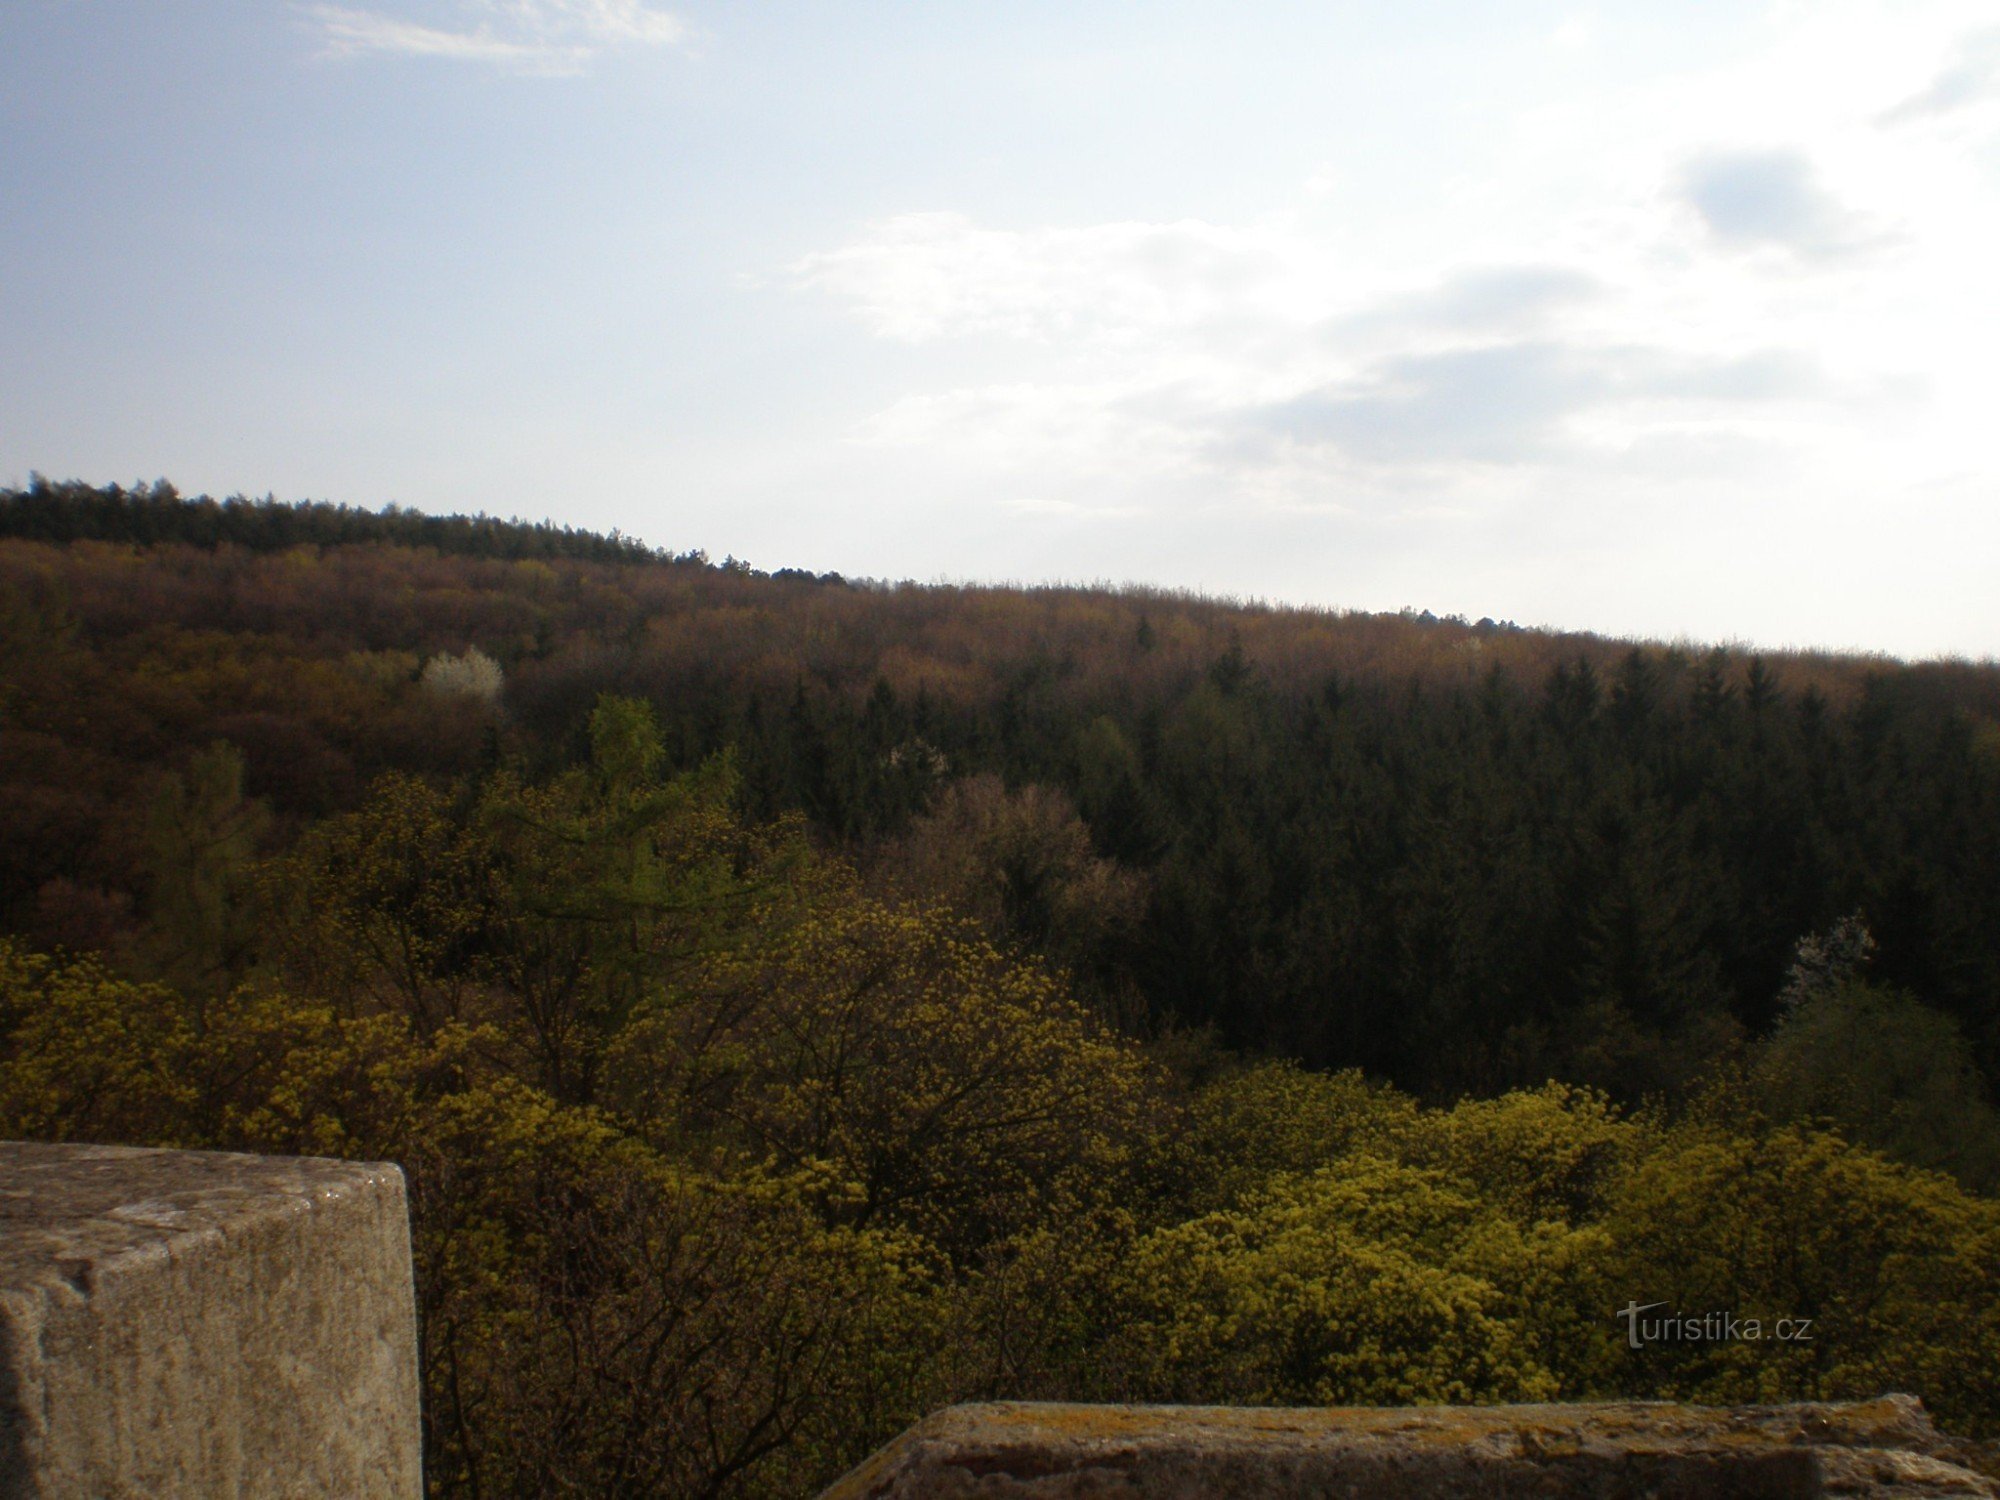 Pogled z razglednega stolpa na gozdni park Cibulka